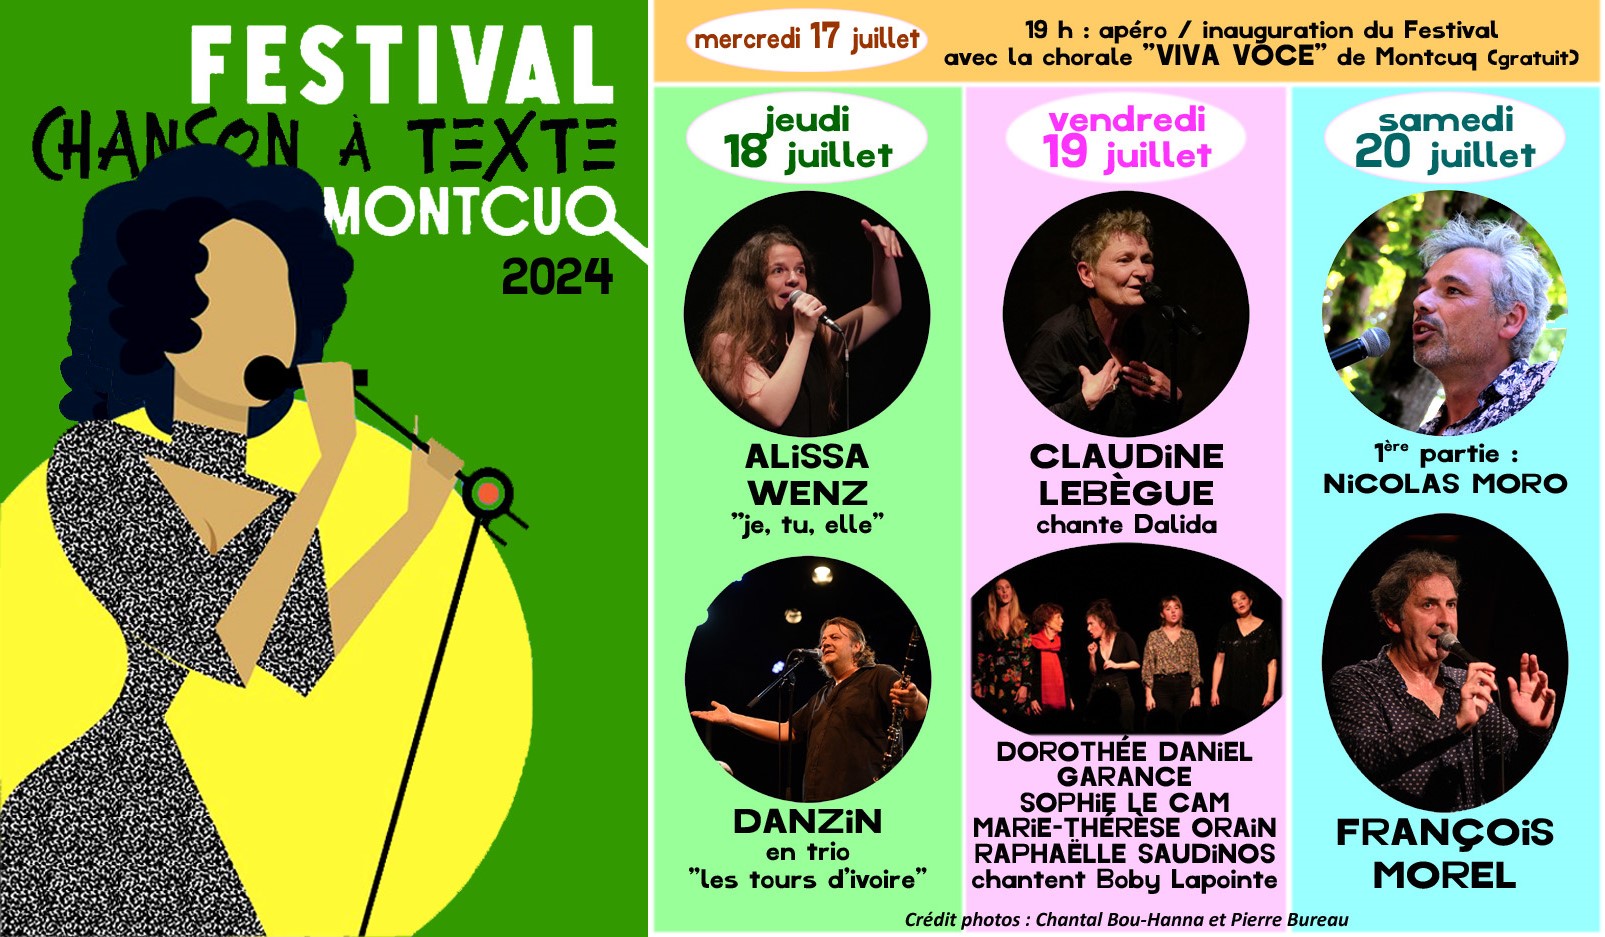 Festival de la Chanson à Texte de Montcuq 2023 : Danzin en trio "Les tours d'ivoire"